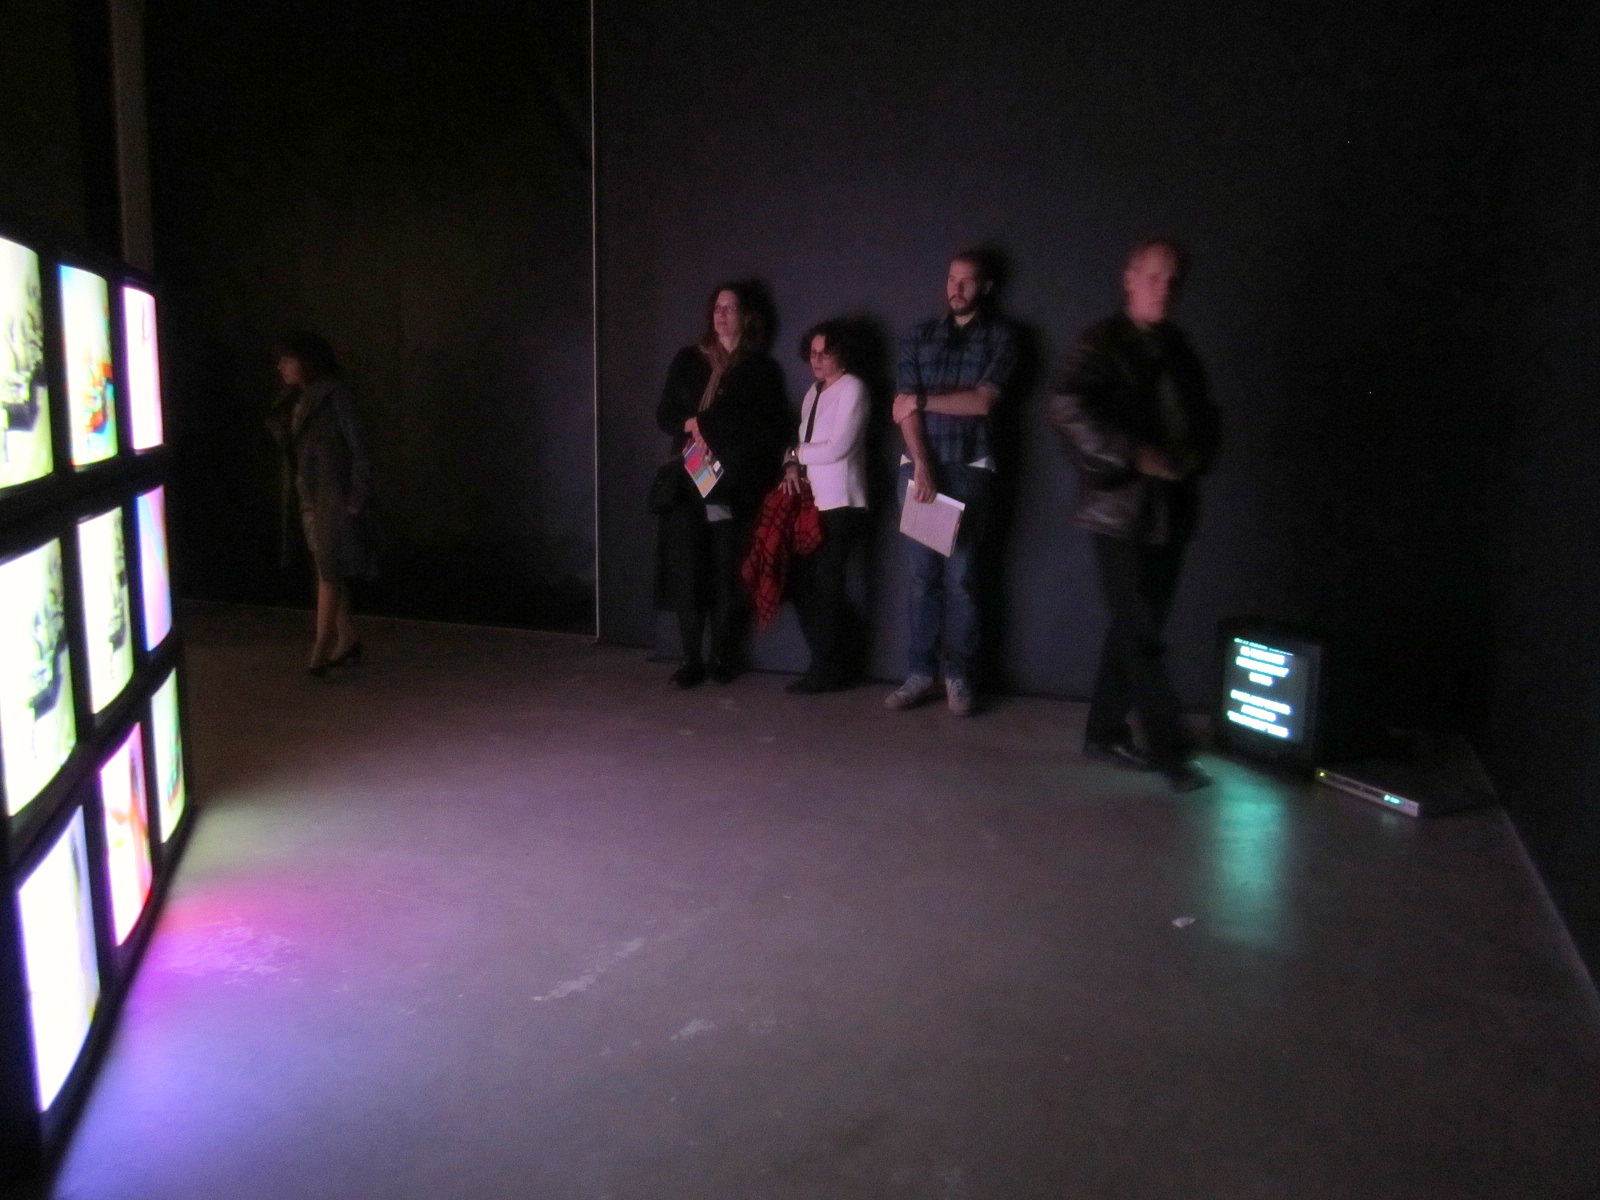 group of people standing in dark room near four digital screens